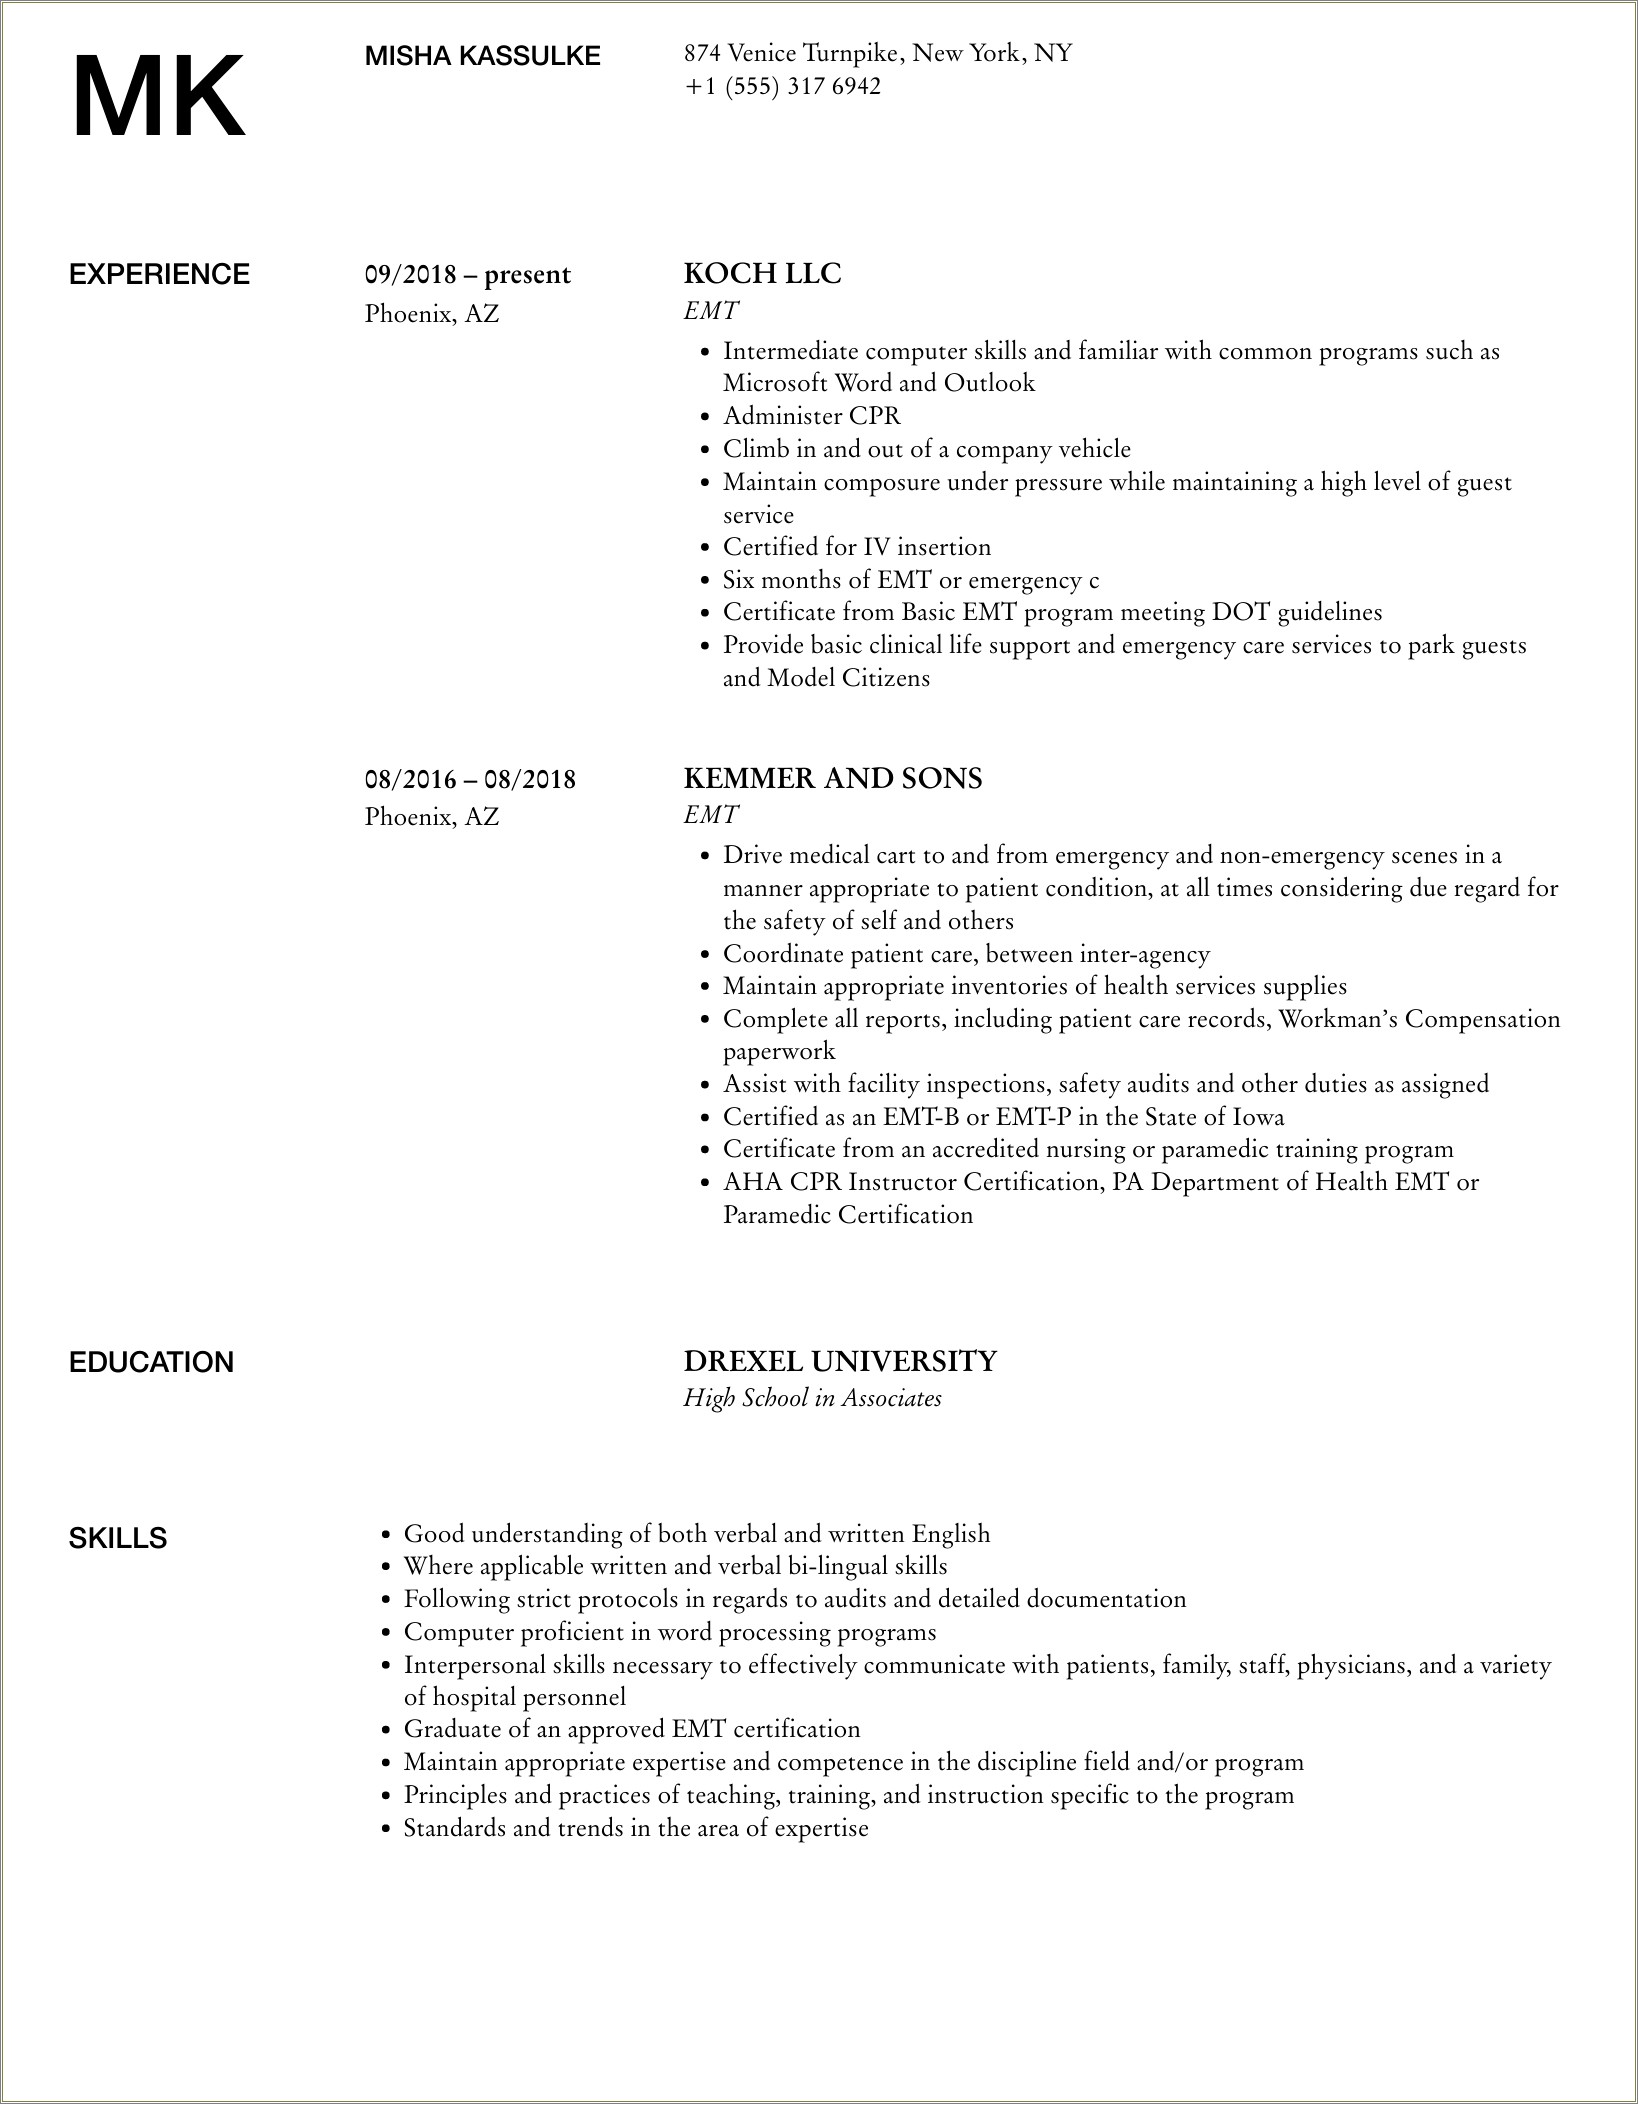 Job Description For Paramedic For Resume